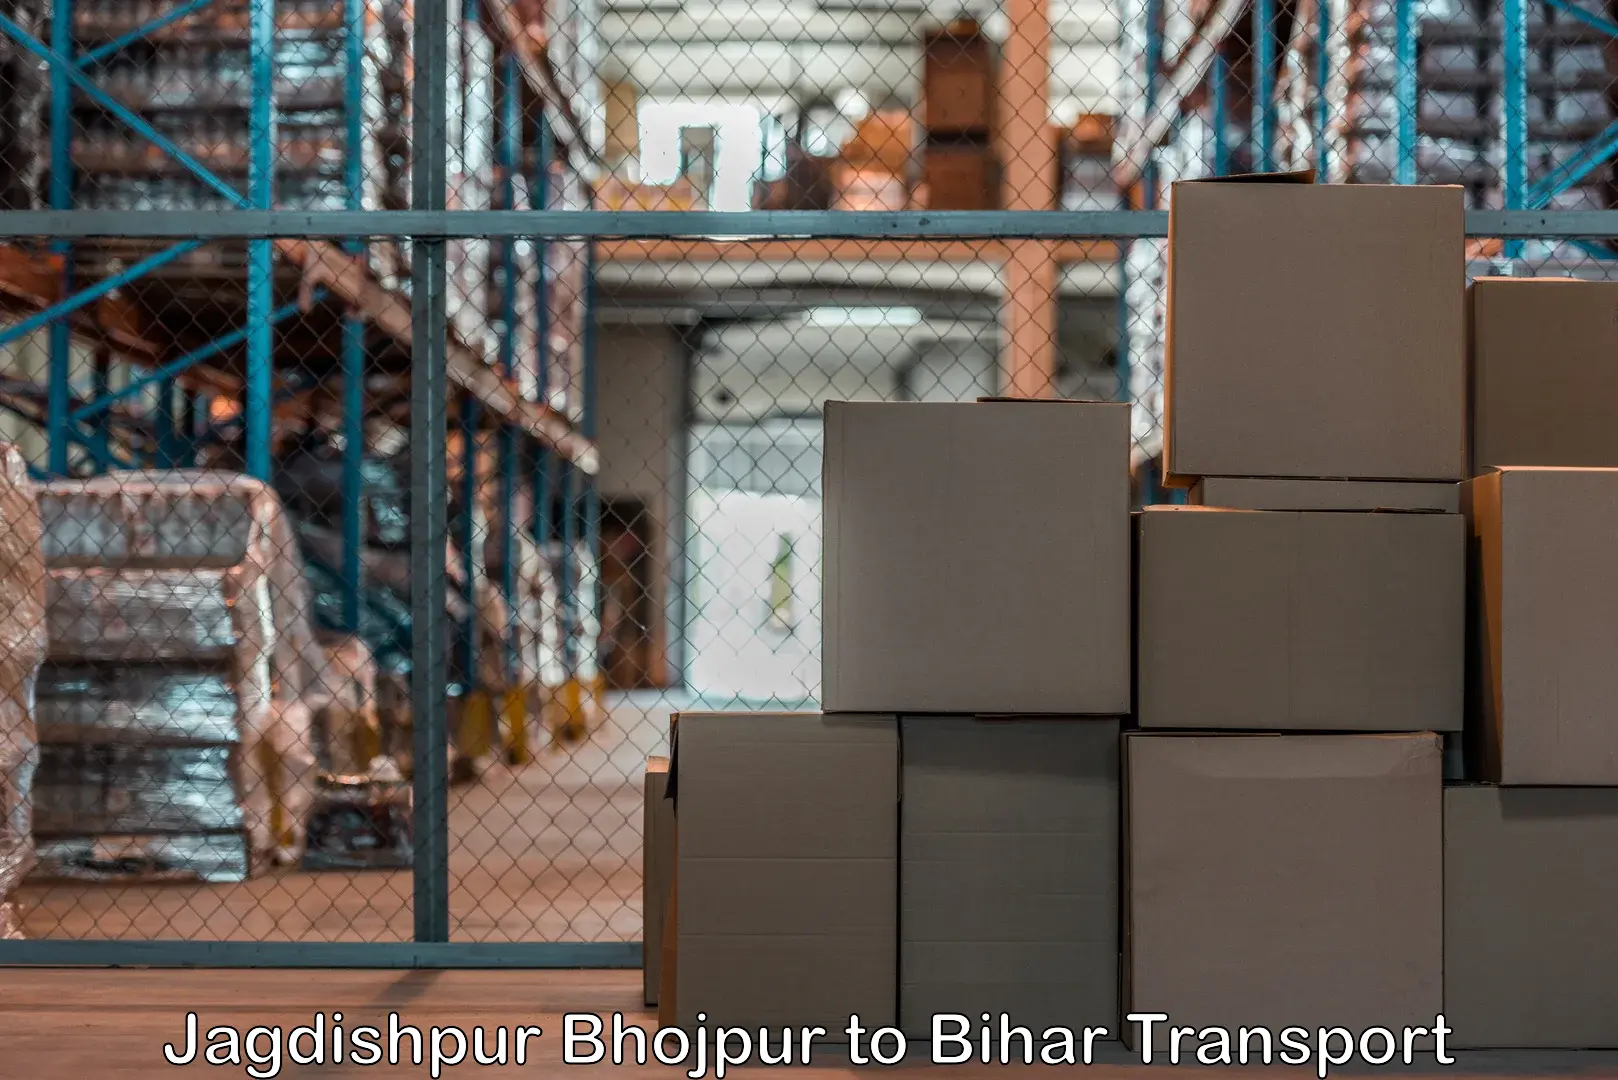 Air cargo transport services Jagdishpur Bhojpur to Araria